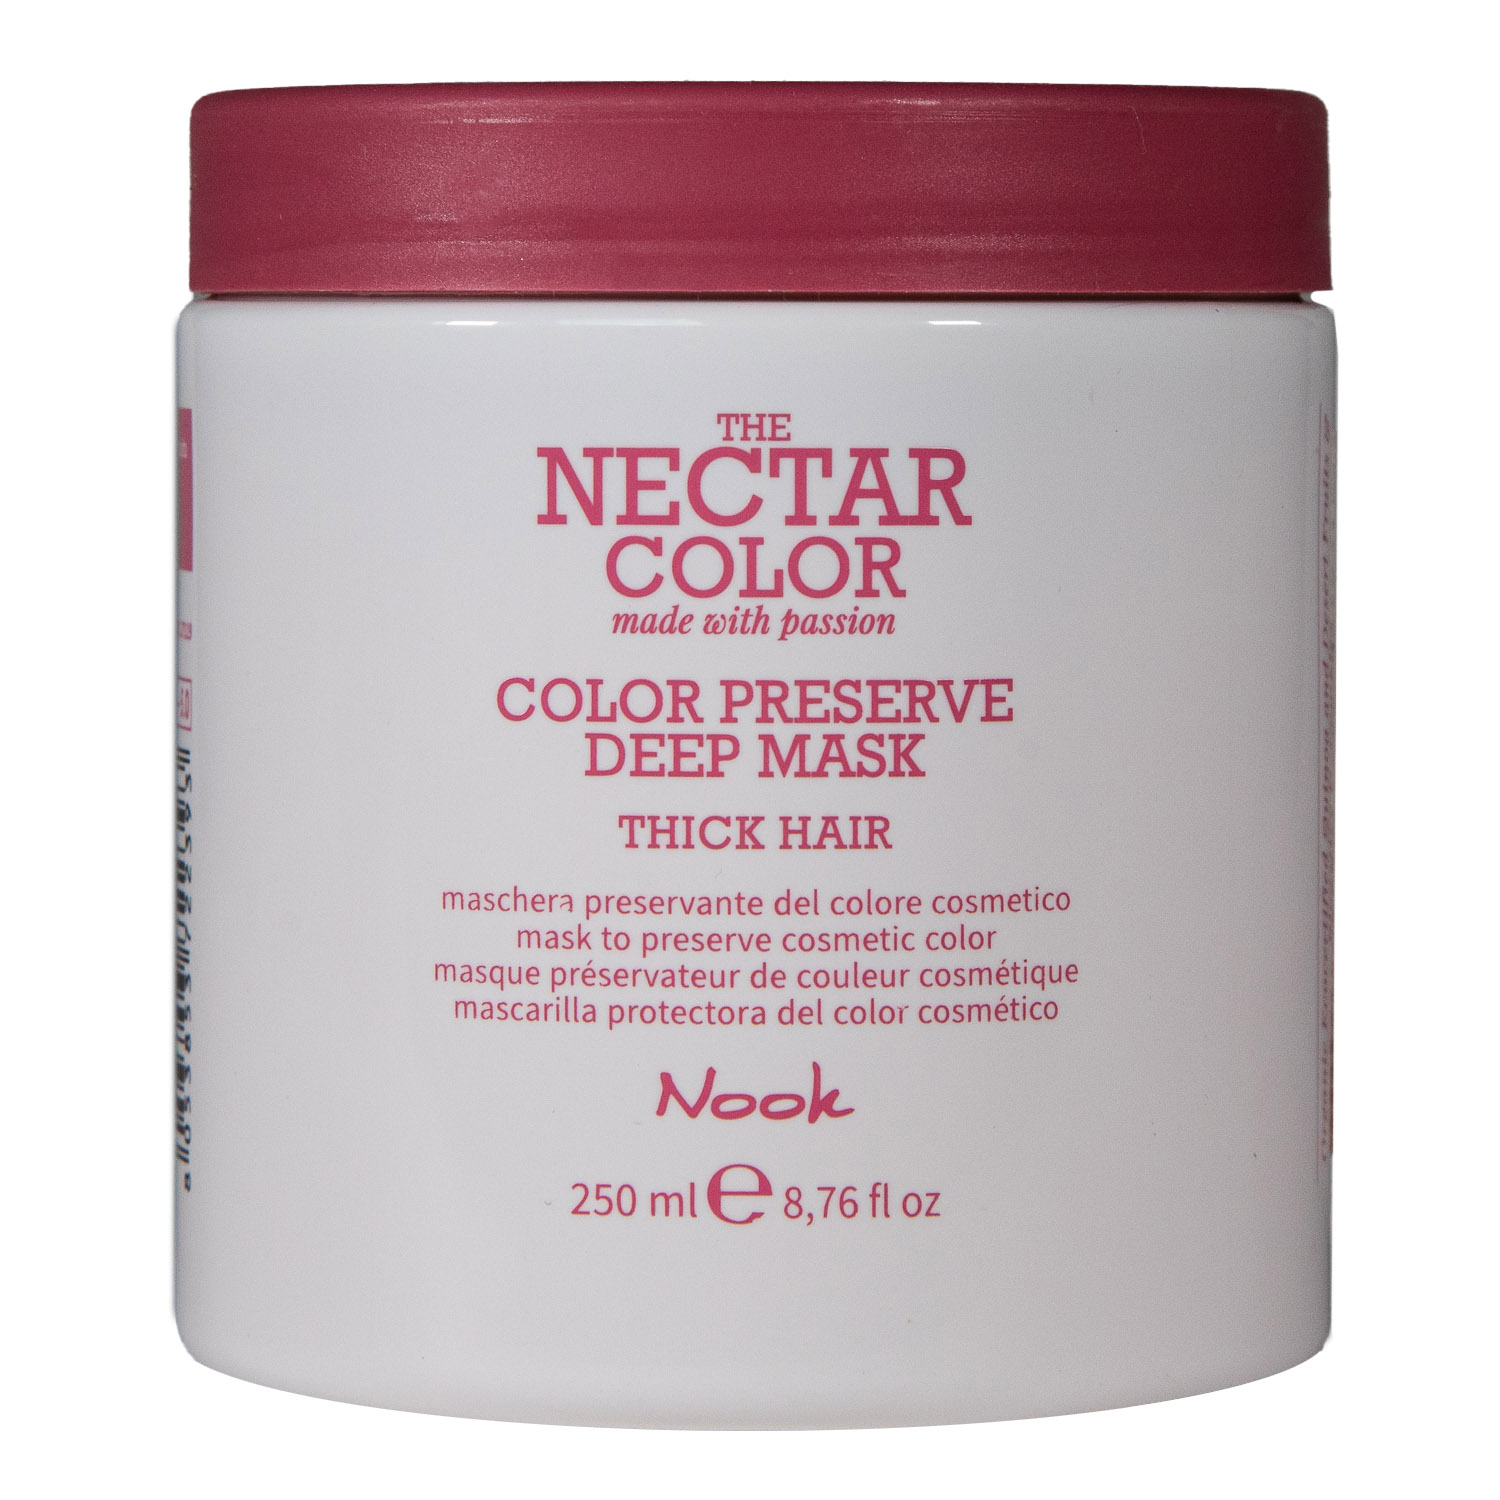 Nook Маска для ухода за плотными и жёсткими окрашенными волосами Color Preserve, 250 мл (Nook, Nectar Color)